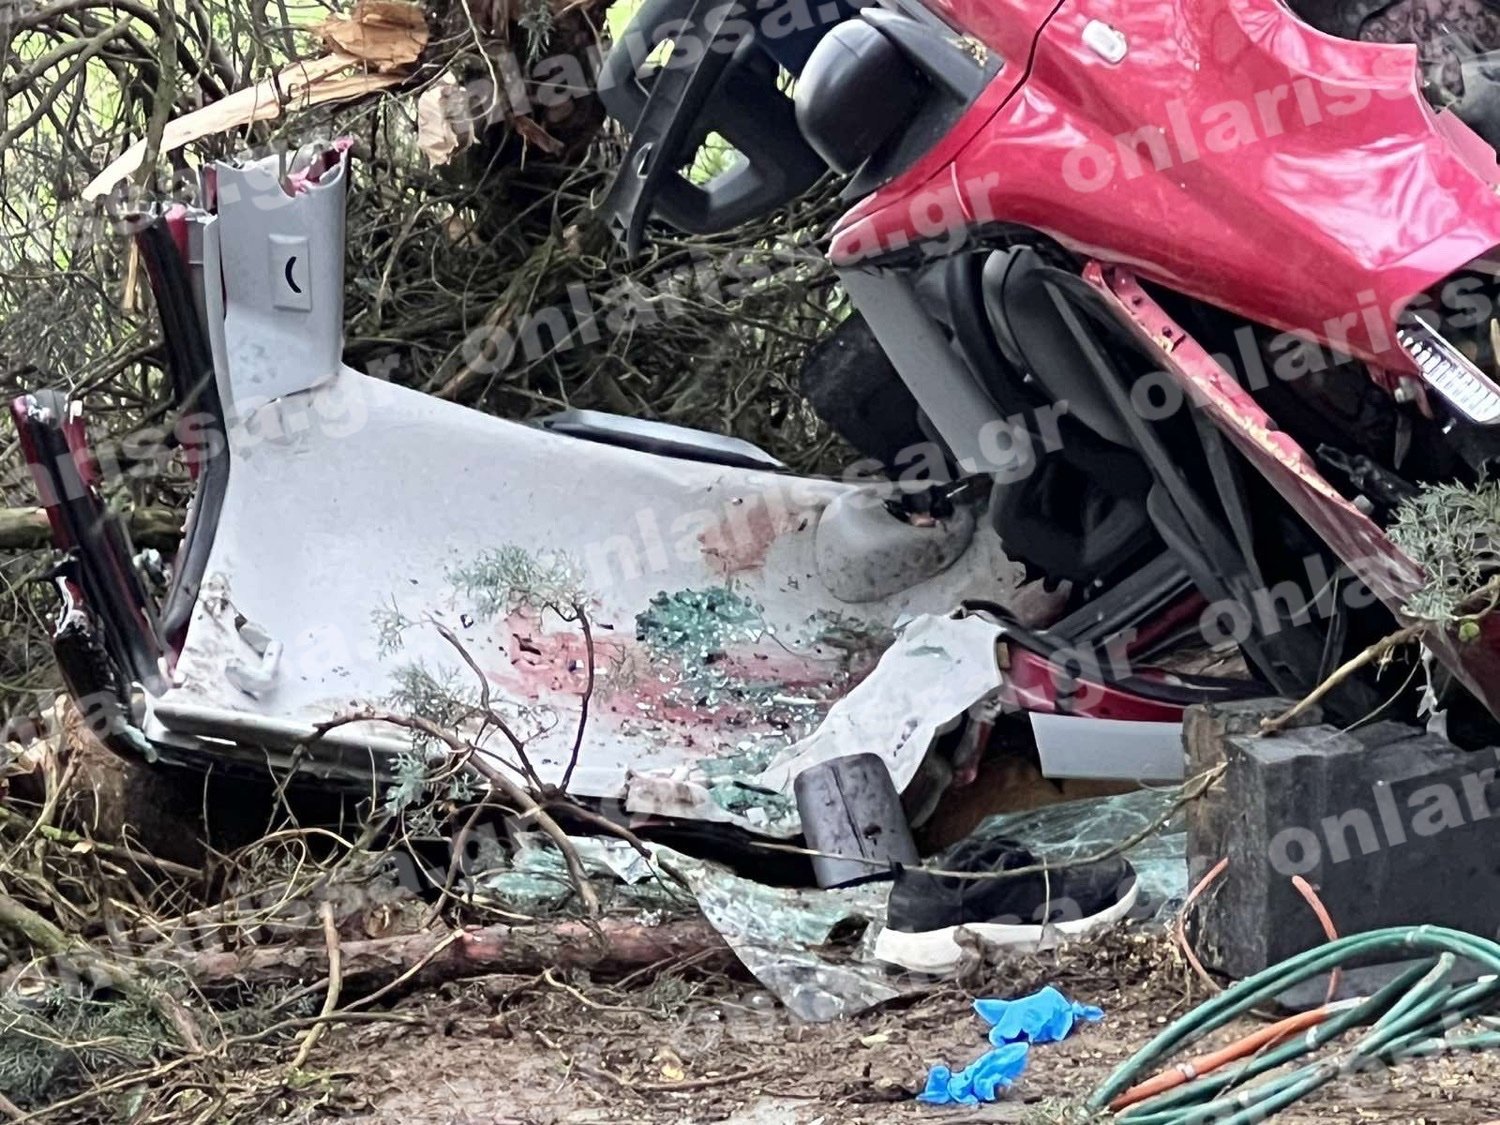 Τραγωδία στη Λάρισα: Νεκρός 29χρονος σε τροχαίο – Εξέπνευσε πριν ώρες, αλλά κανείς δεν είχε δει το αυτοκίνητο [εικόνες] - ΝΕΑ